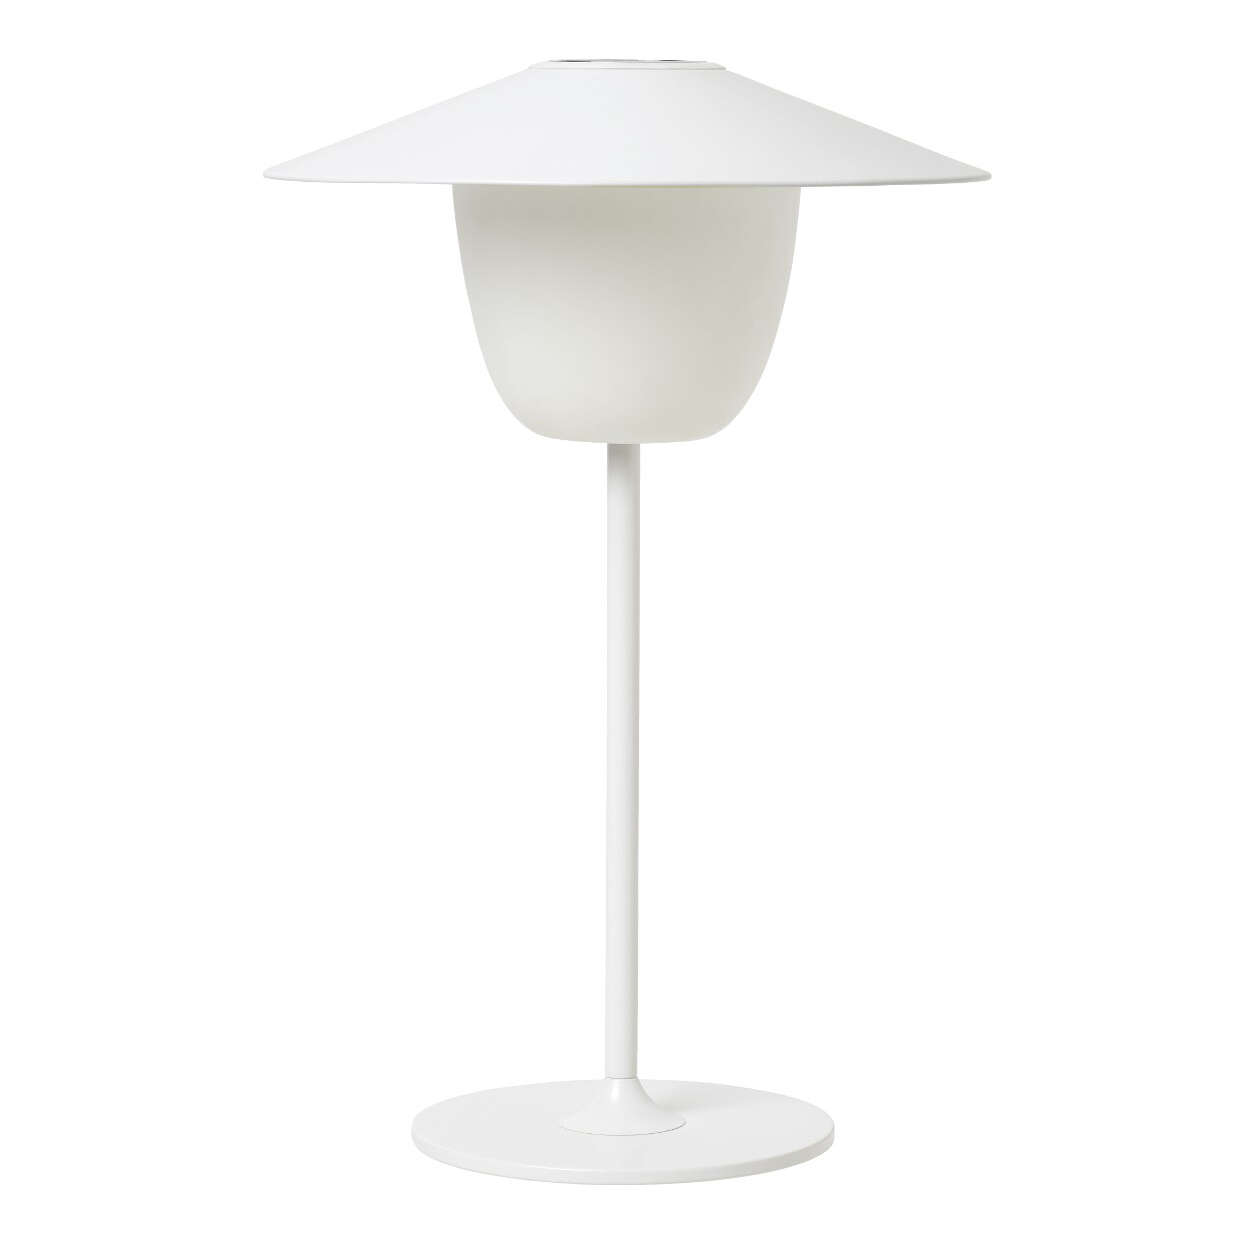 Mobilní LED lampa ANI LAMP bílá Blomus